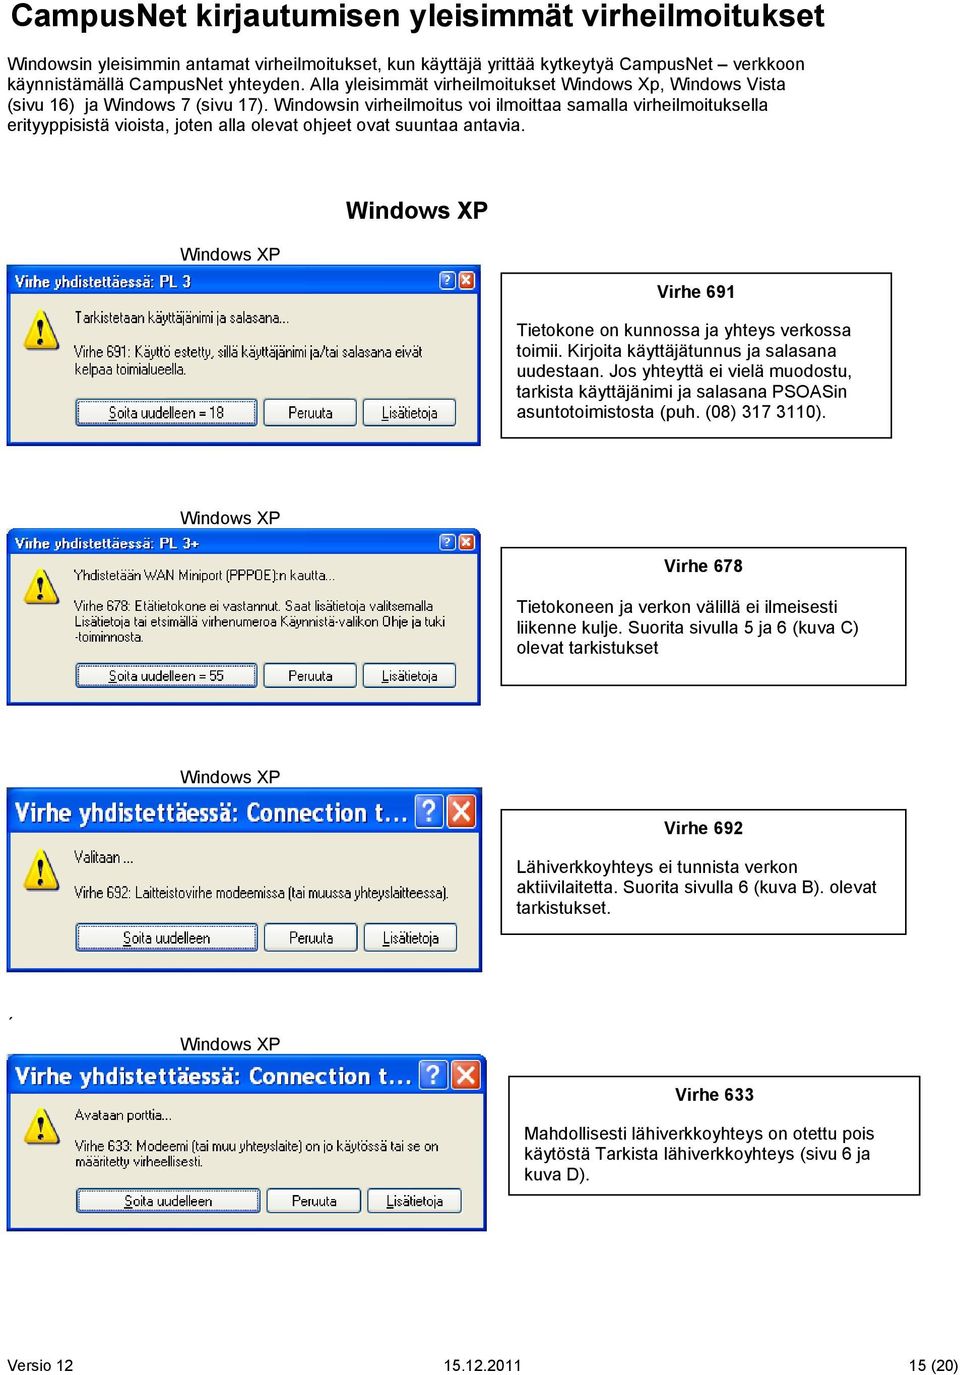 Windowsin virheilmoitus voi ilmoittaa samalla virheilmoituksella erityyppisistä vioista, joten alla olevat ohjeet ovat suuntaa antavia. Virhe 691 Tietokone on kunnossa ja yhteys verkossa toimii.